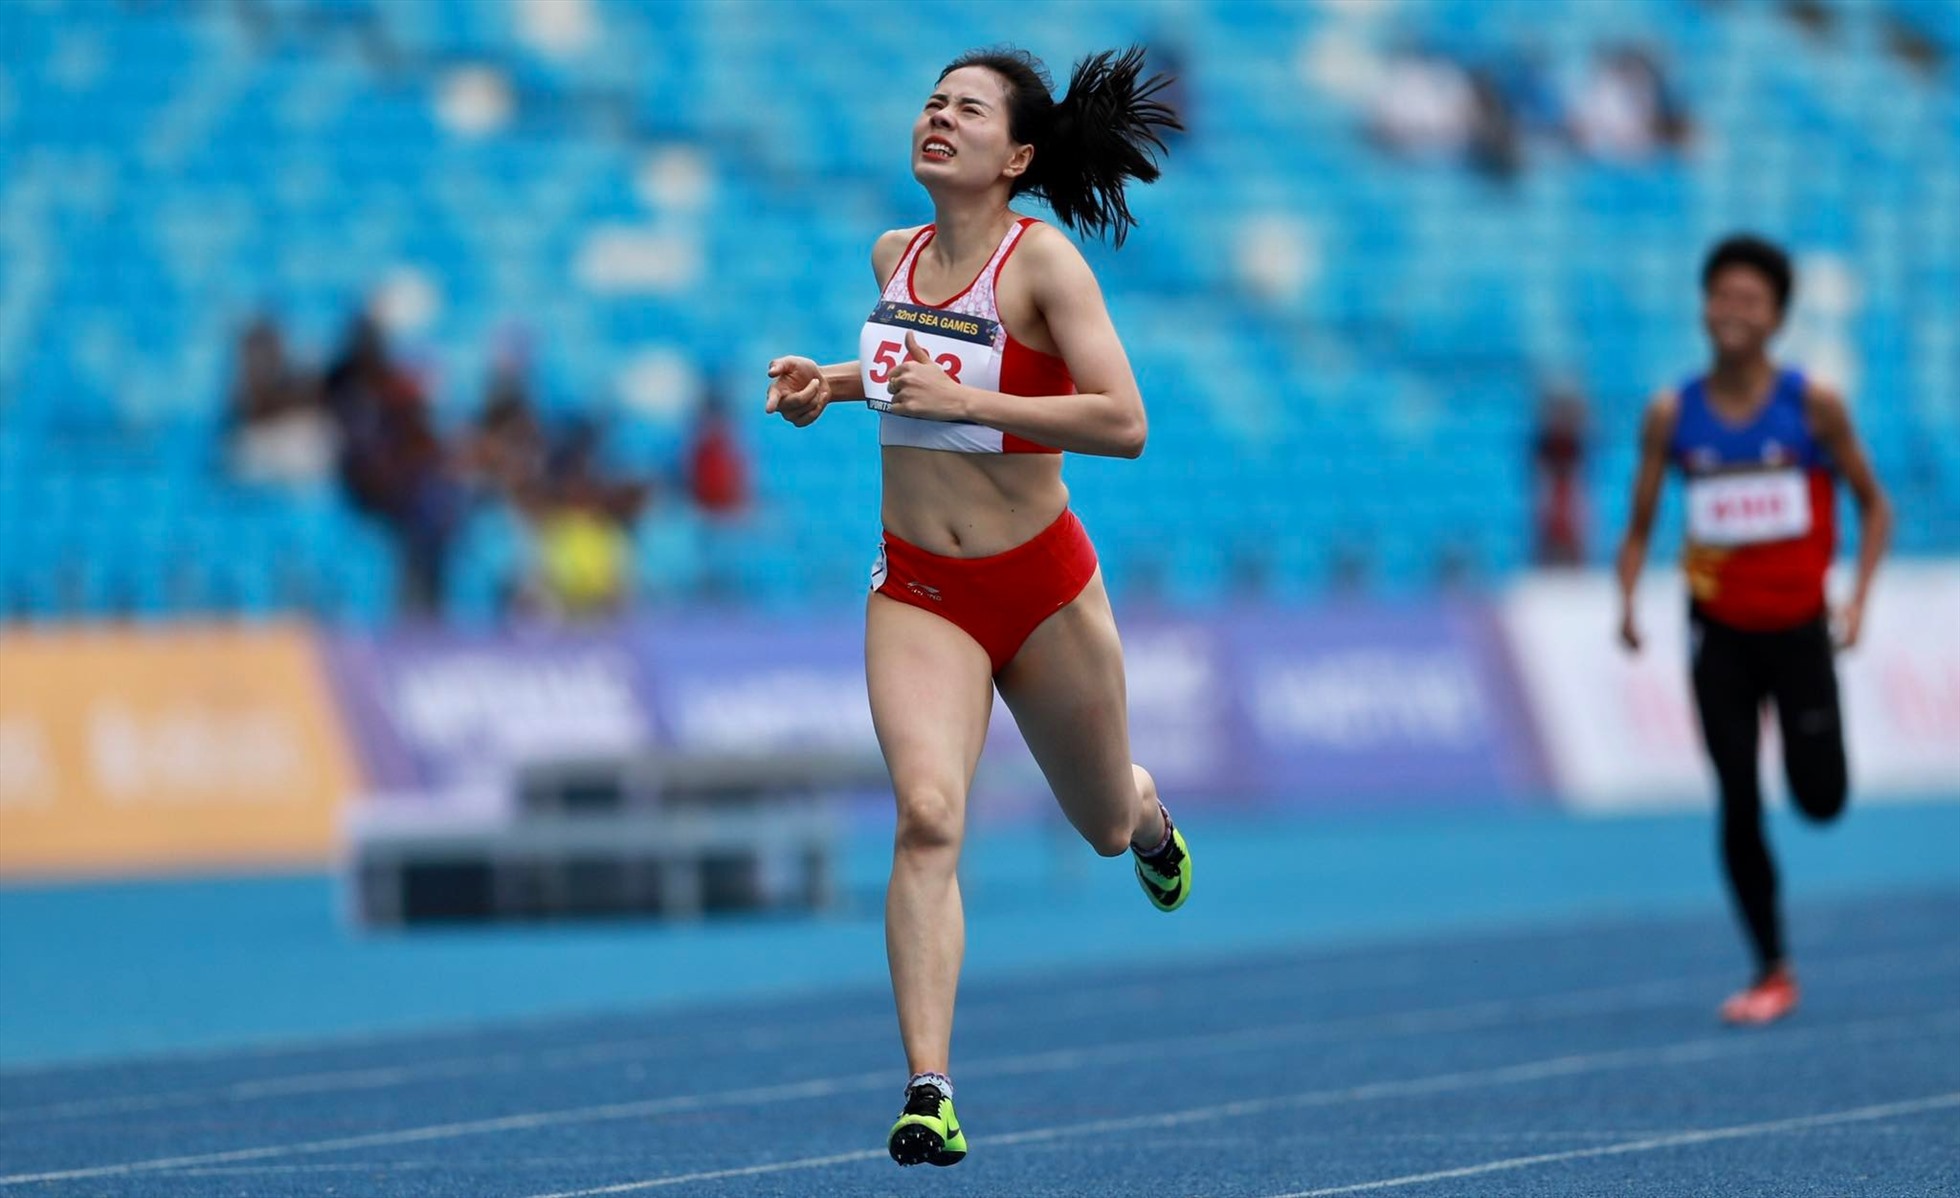 Vận động viên Nguyễn Thị Huyền không thể bảo vệ tấm huy chương vàng điền kinh nội dung 400m nữ khi chỉ về đích thứ 2. Ảnh: Thanh Vũ